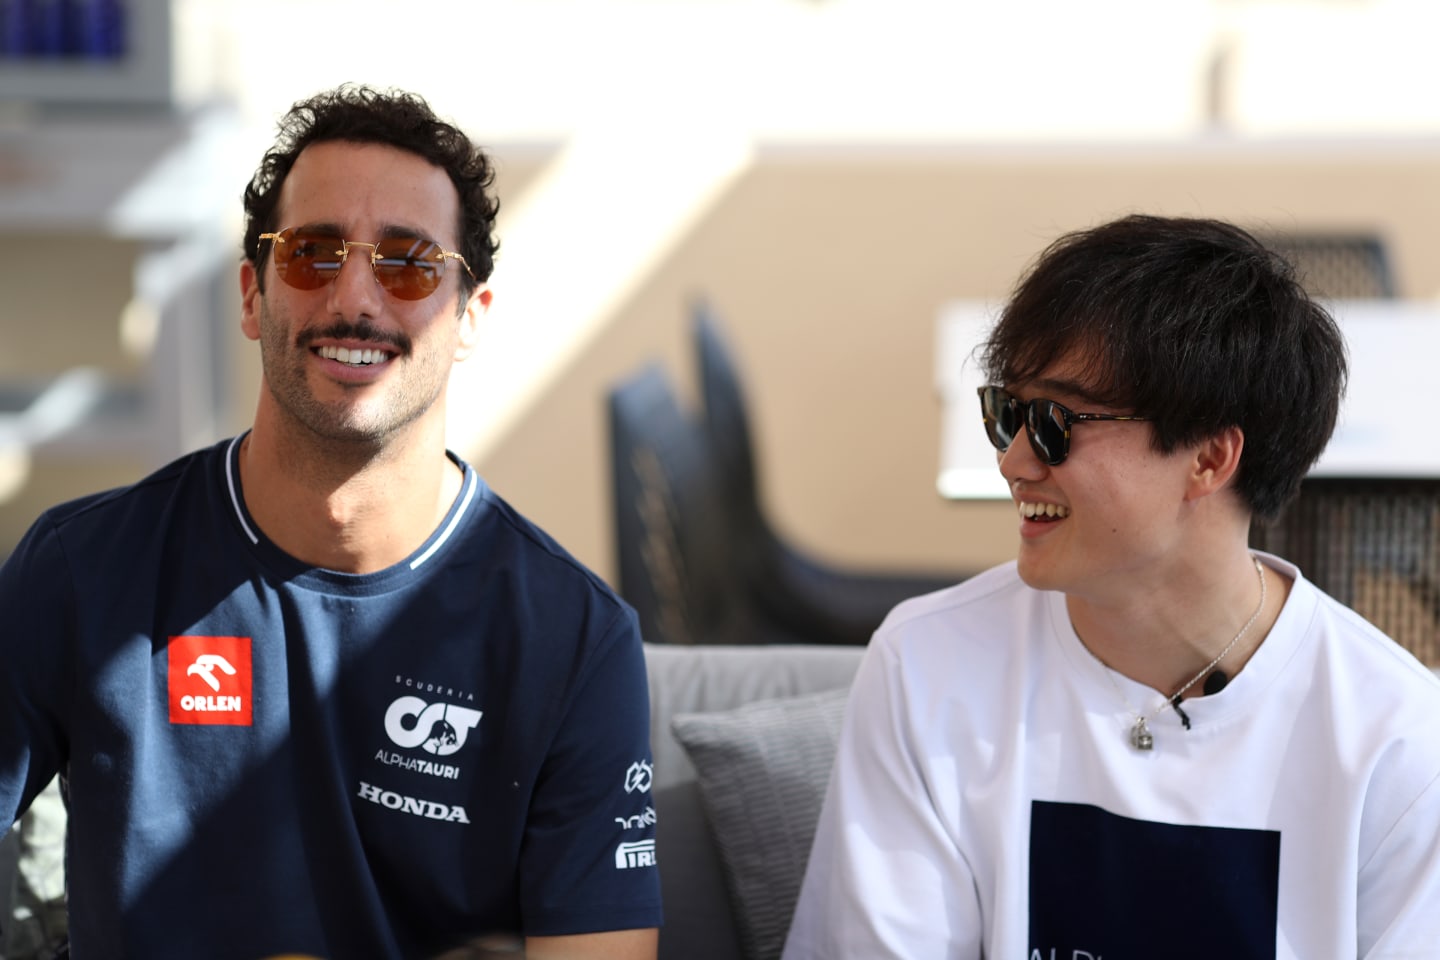 ABU DHABI, UNITED ARAB EMIRATES - NOVEMBER 23: Daniel Ricciardo of Australia and Scuderia